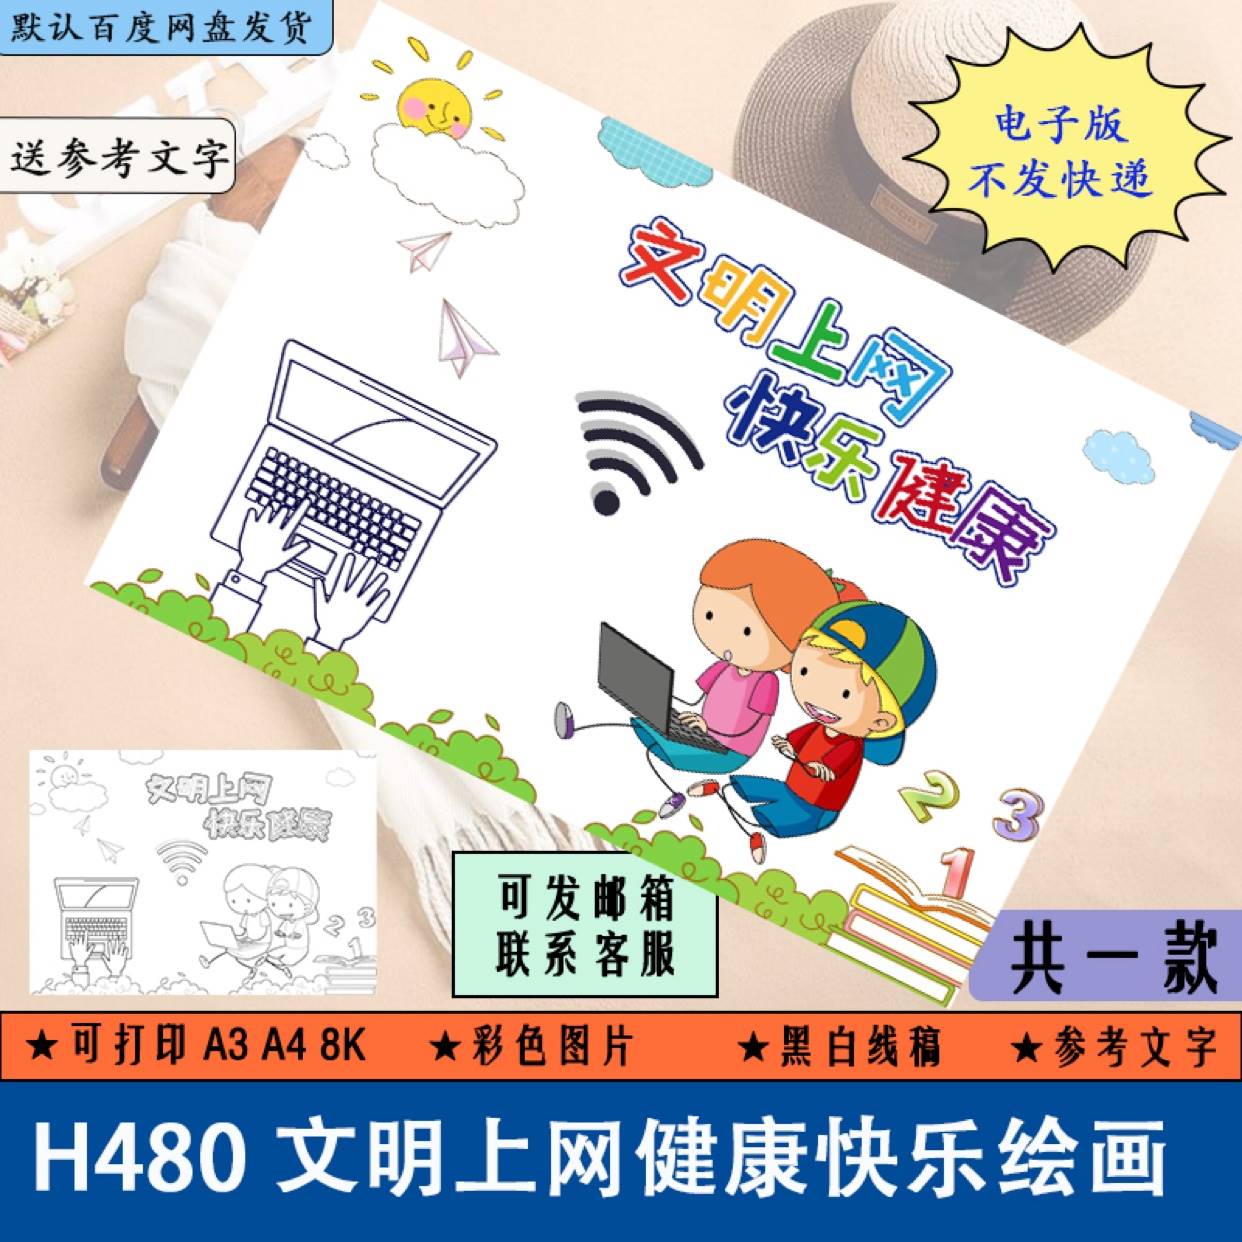 H480文明上网健康快乐儿童绘画手抄报校园网络安全小报线描涂色